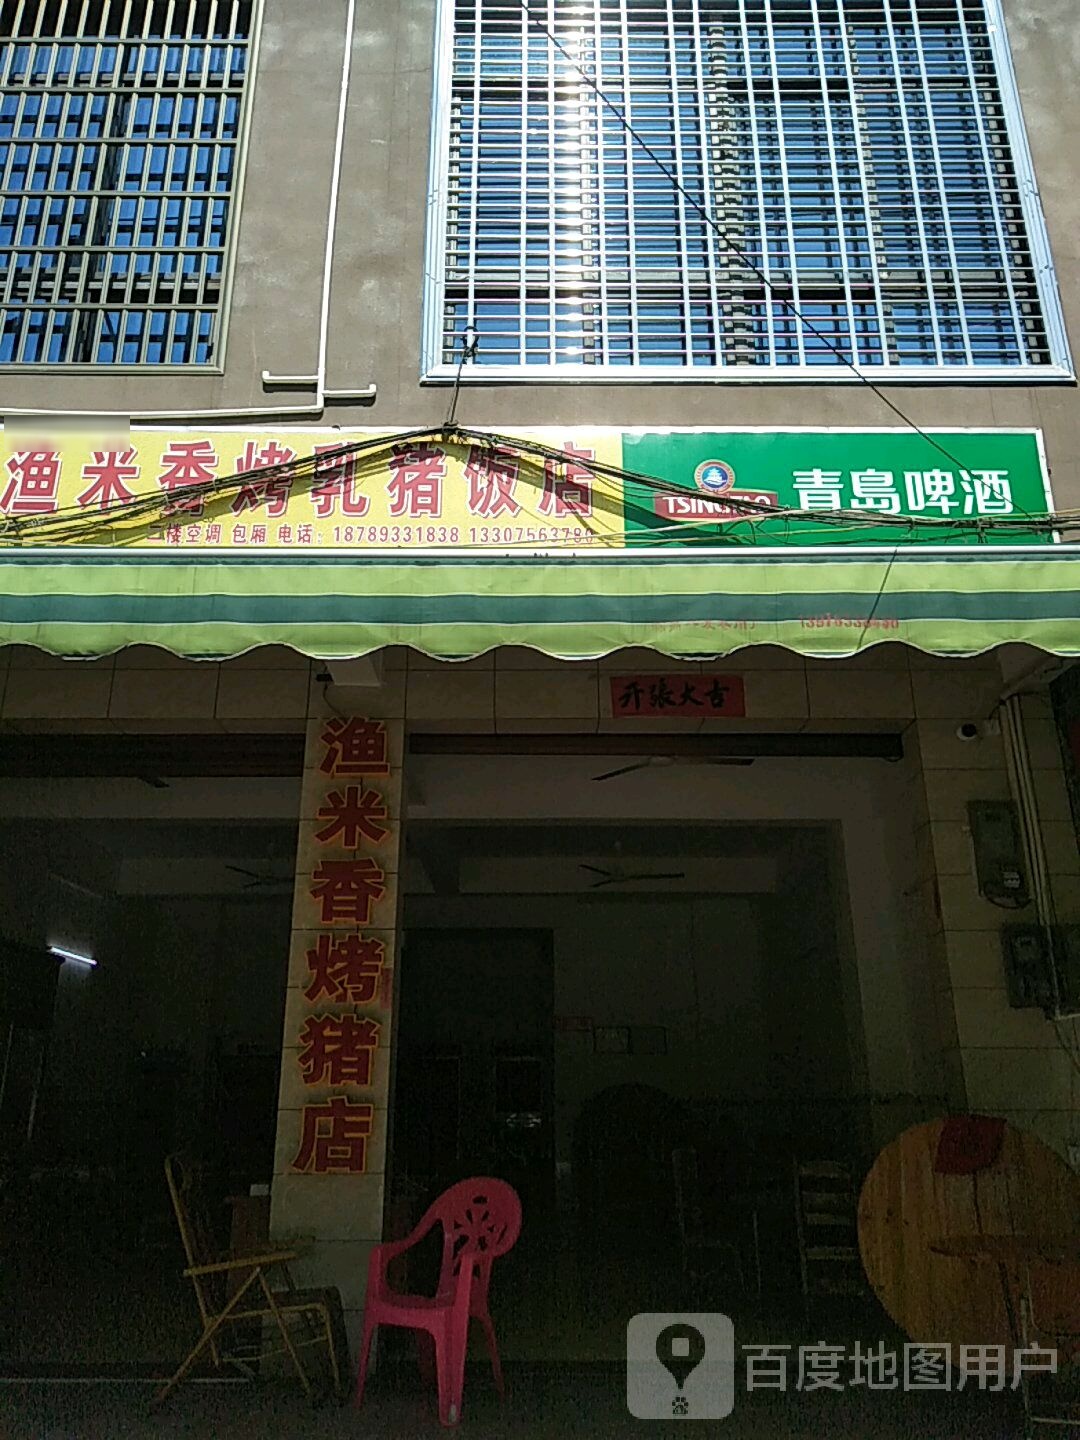 渔米香烤乳猪店